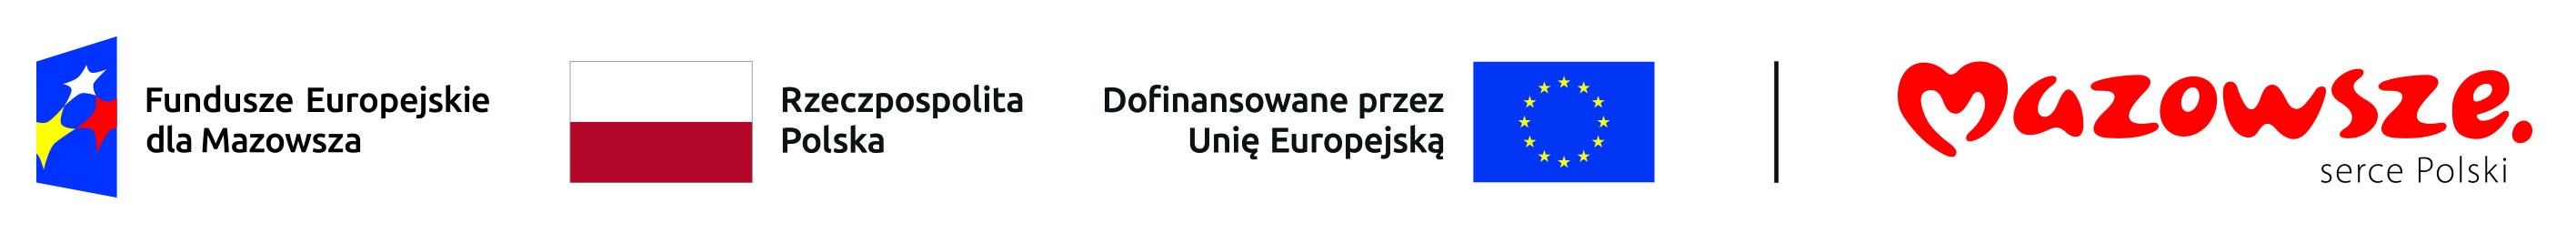 Logotyp Fundusze Europejskie dla Mazowsza, flaga Polski i Unii Europejskiej oraz logo promocyjne Mazowsza złożone z ozdobnego napisu Mazowsze serce Polski